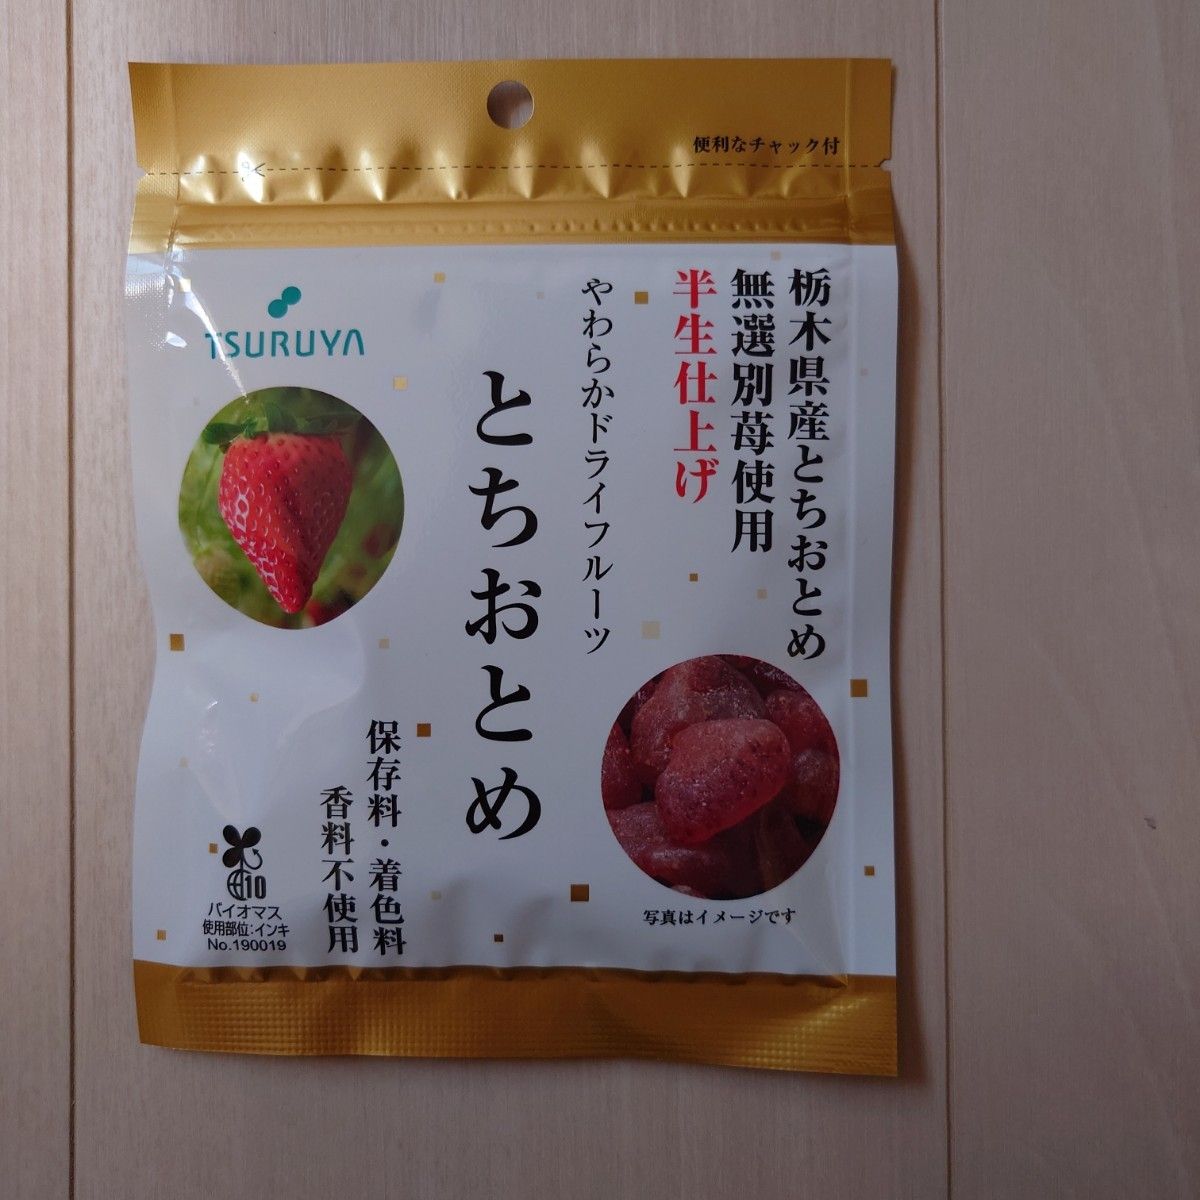 ツルヤ 栃木県産半生仕上げやわらかドライフルーツ とちおとめ2袋